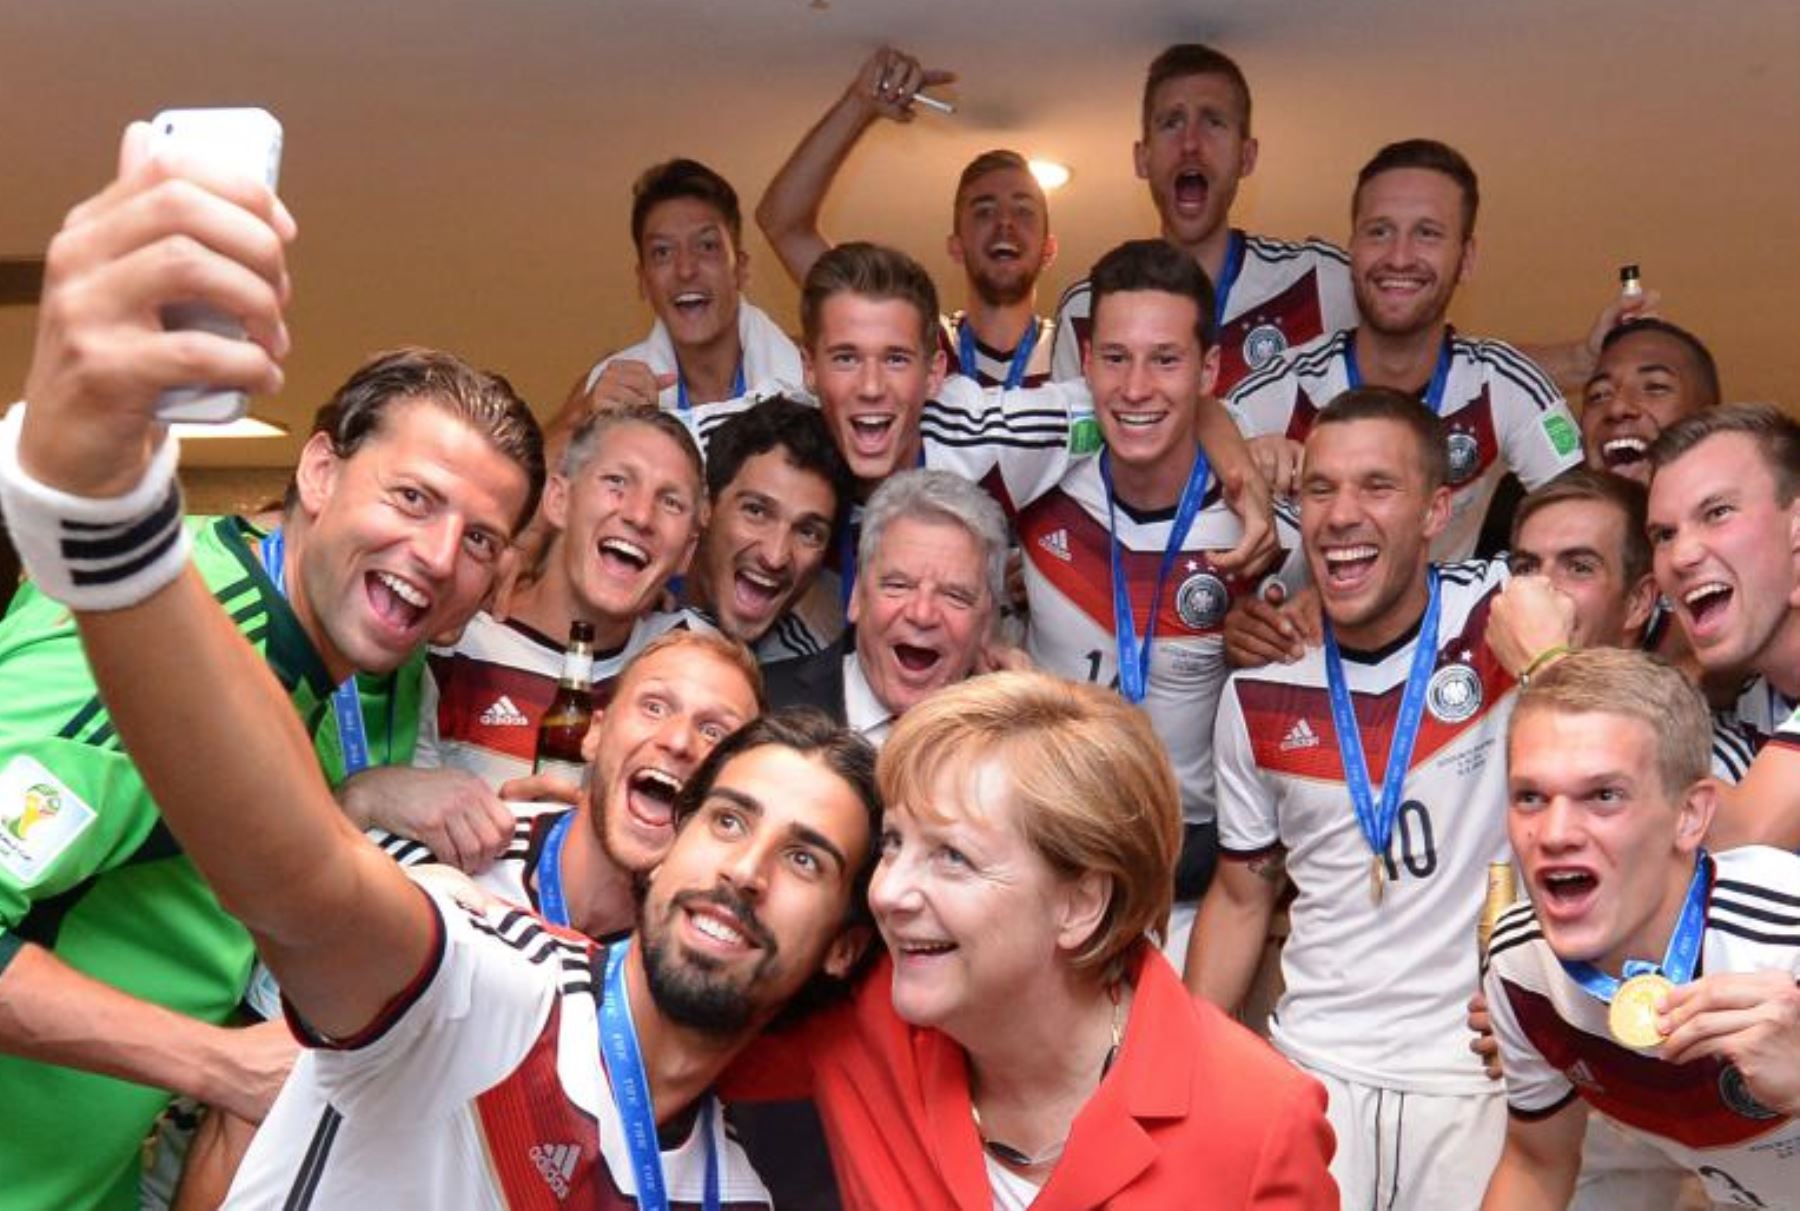 La canciller Angela Merkel y el presidente alemán Joachim Gauck celebran con los jugadores en el vestuario de Alemania después de la FIFA - Mundial de Brasil 2014 en el partido final entre Alemania y Argentina en el Maracaná el 13 de julio de 2014 en Río de Janeiro. INTERNET/Medios